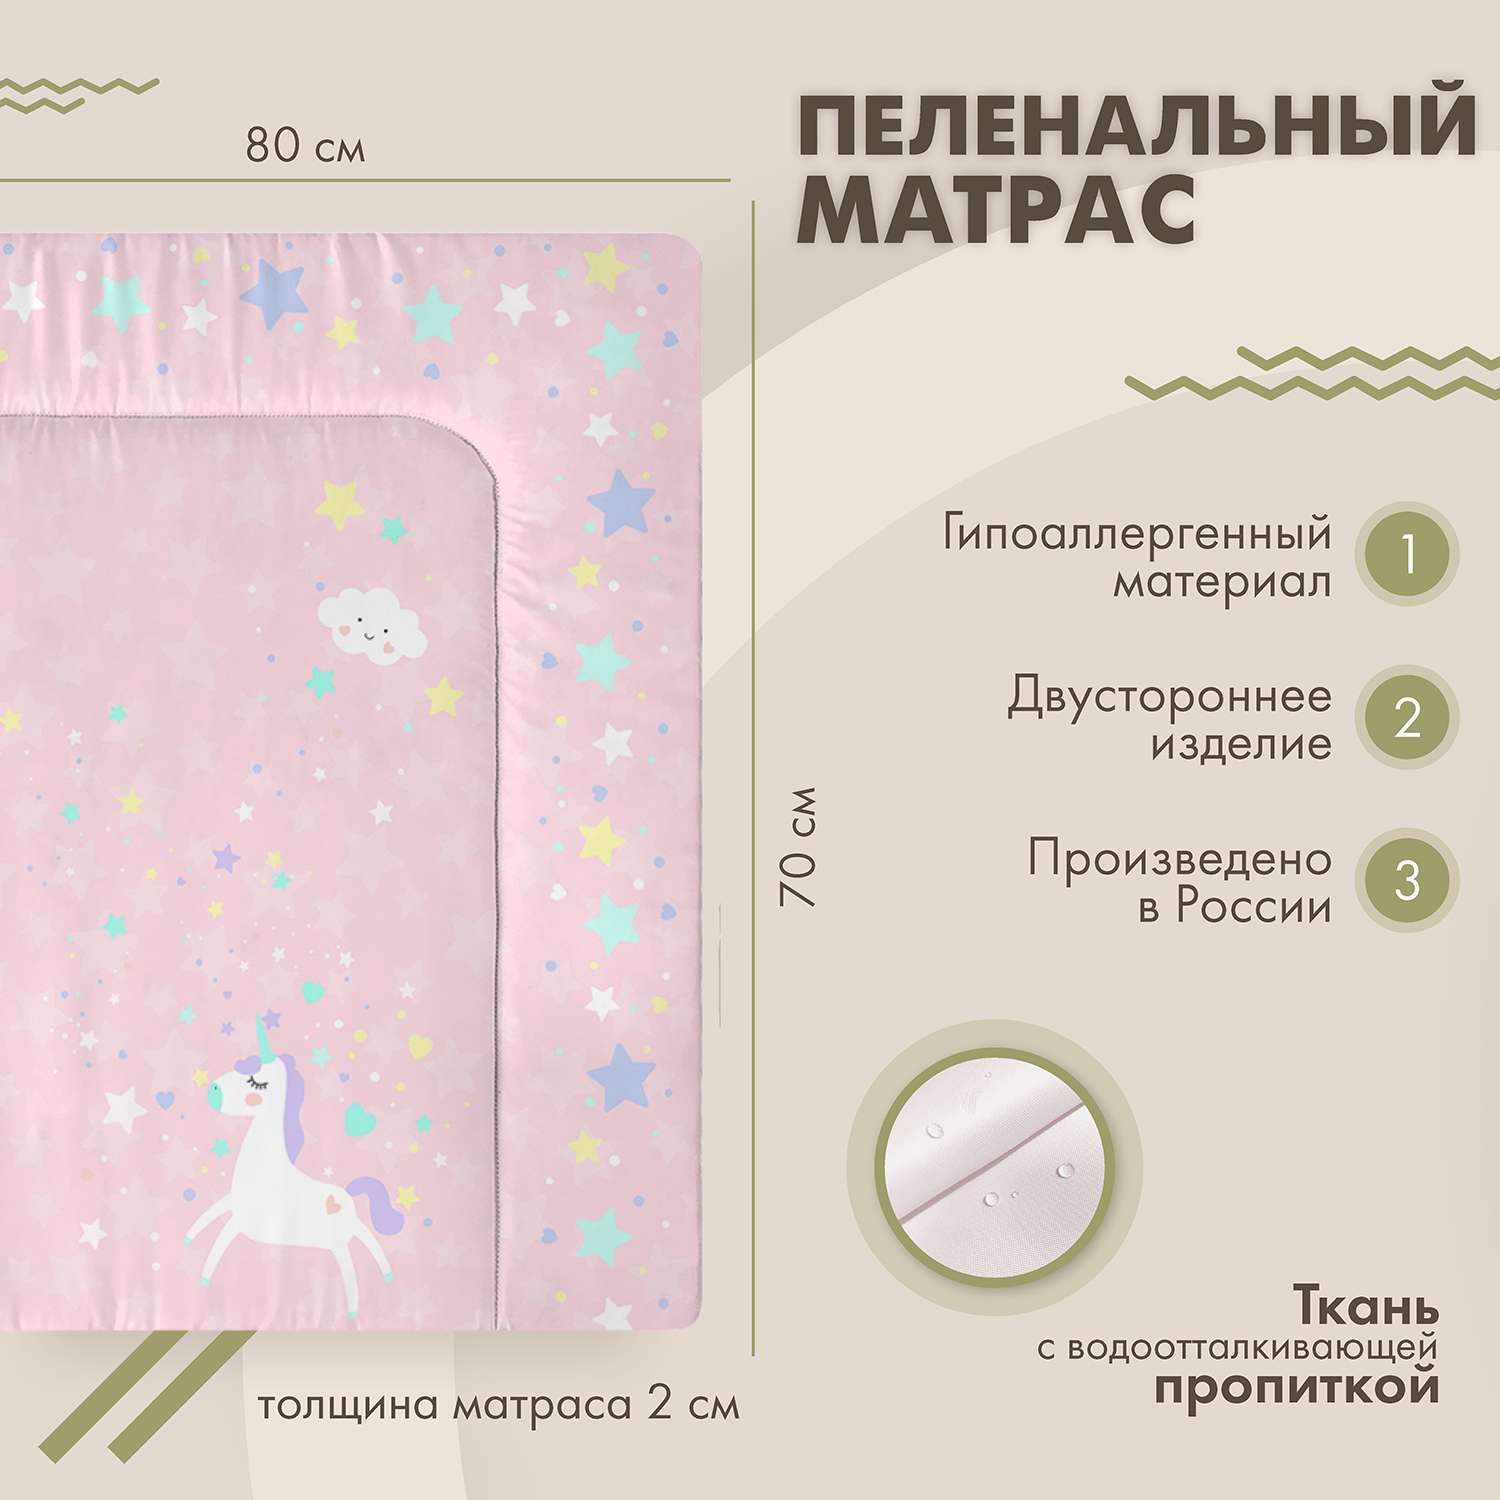 Пеленальный матрас sfer.tex 70х80 см Единорог розовый - фото 2